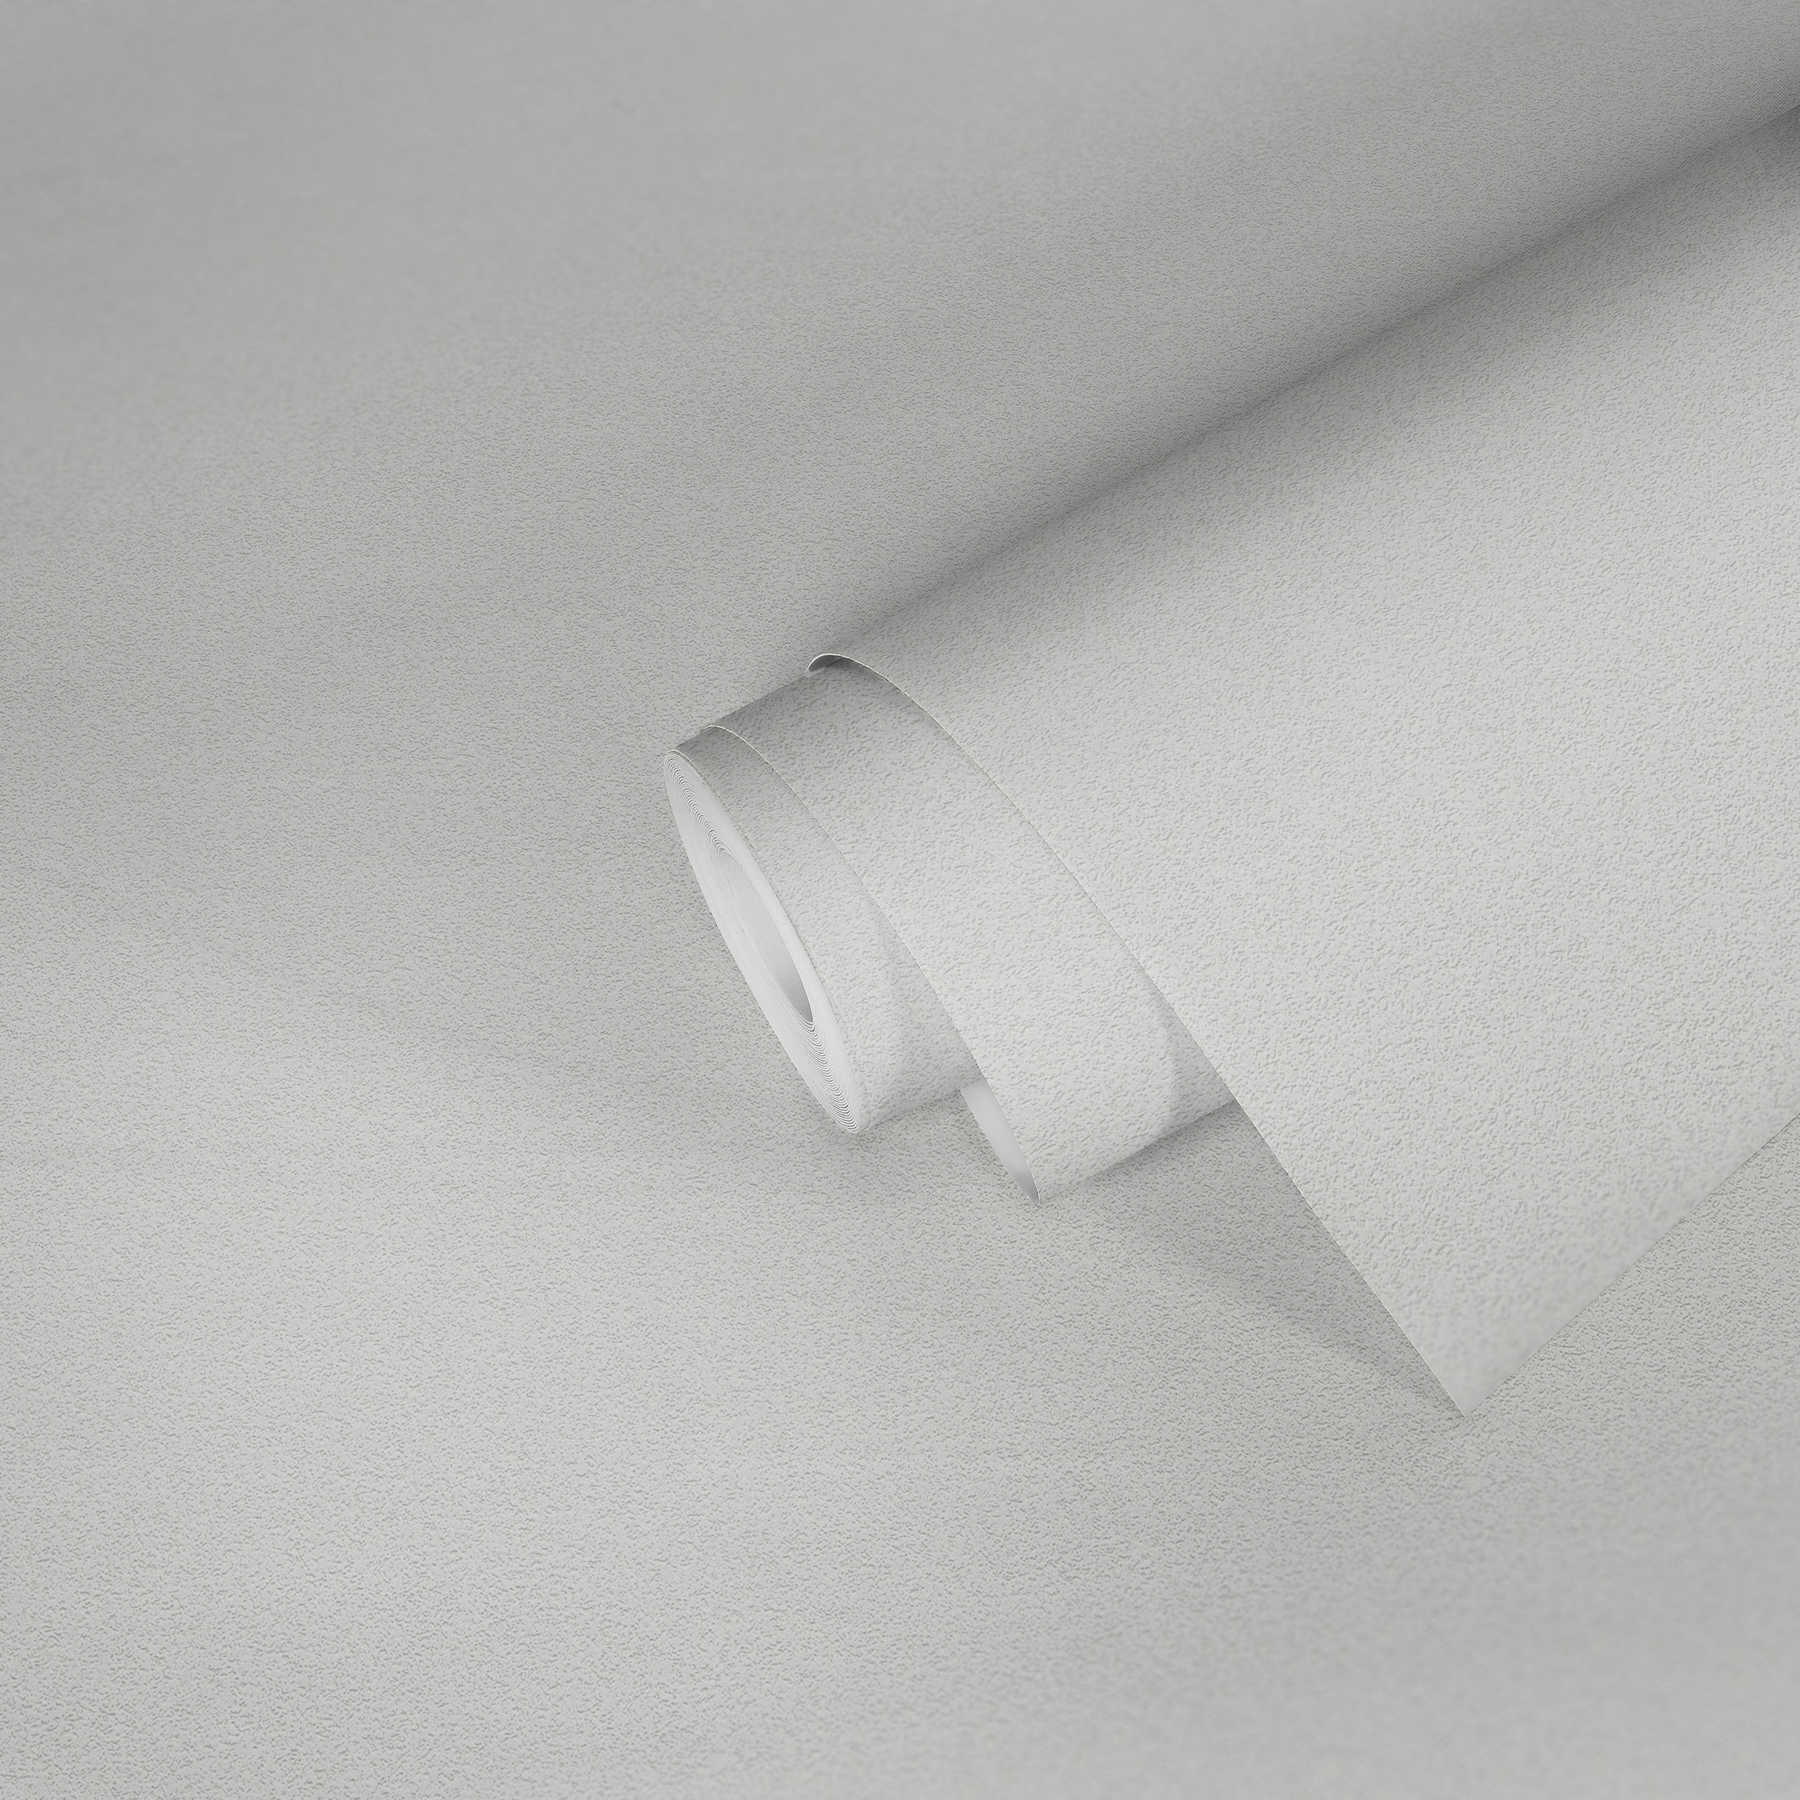             Papier peint uni avec structure de surface fine - blanc
        